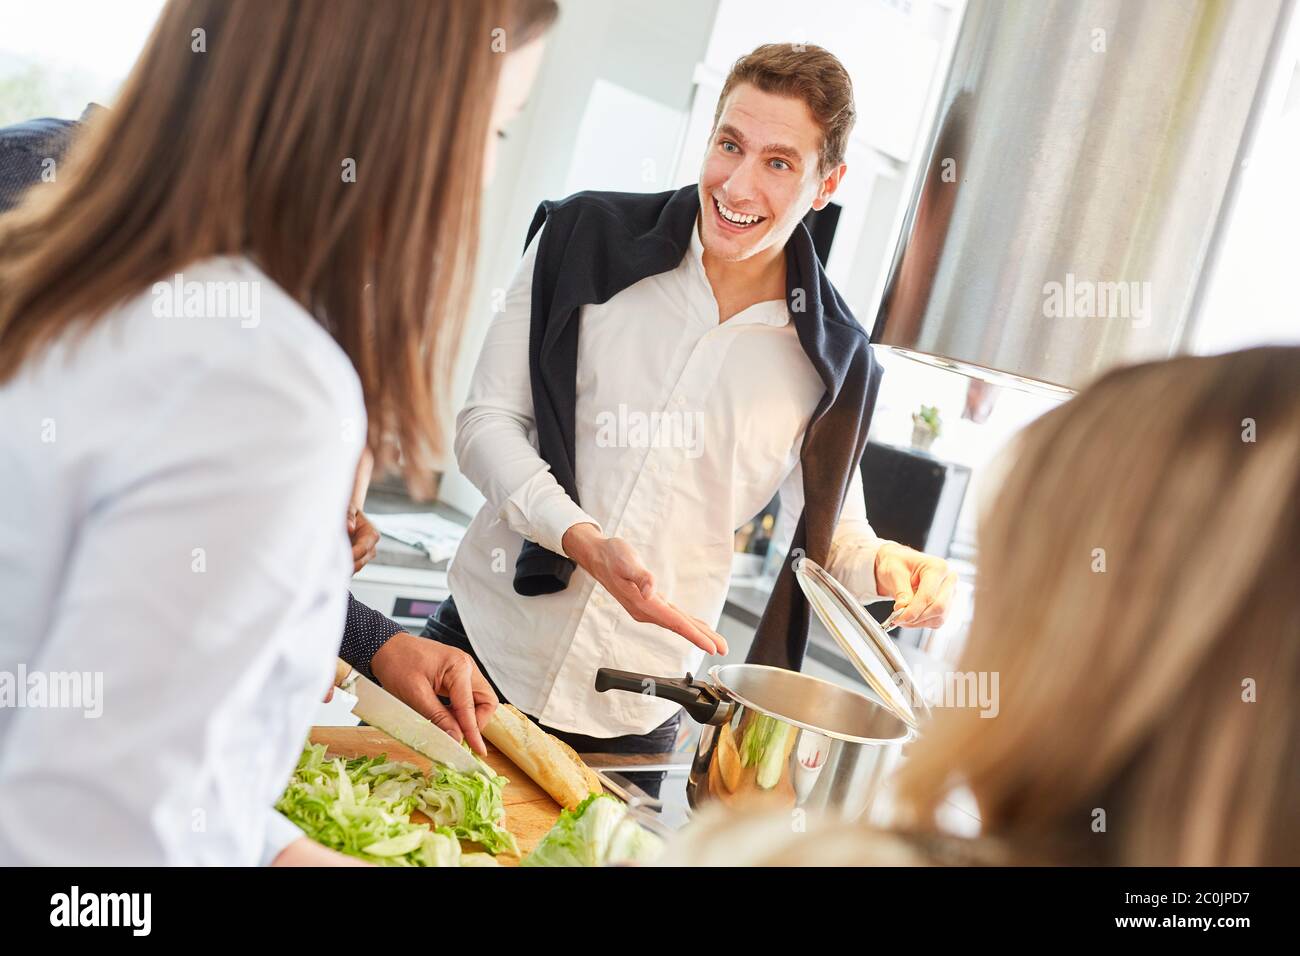 Los estudiantes que se reían preparan comidas juntos en una cocina compartida Foto de stock